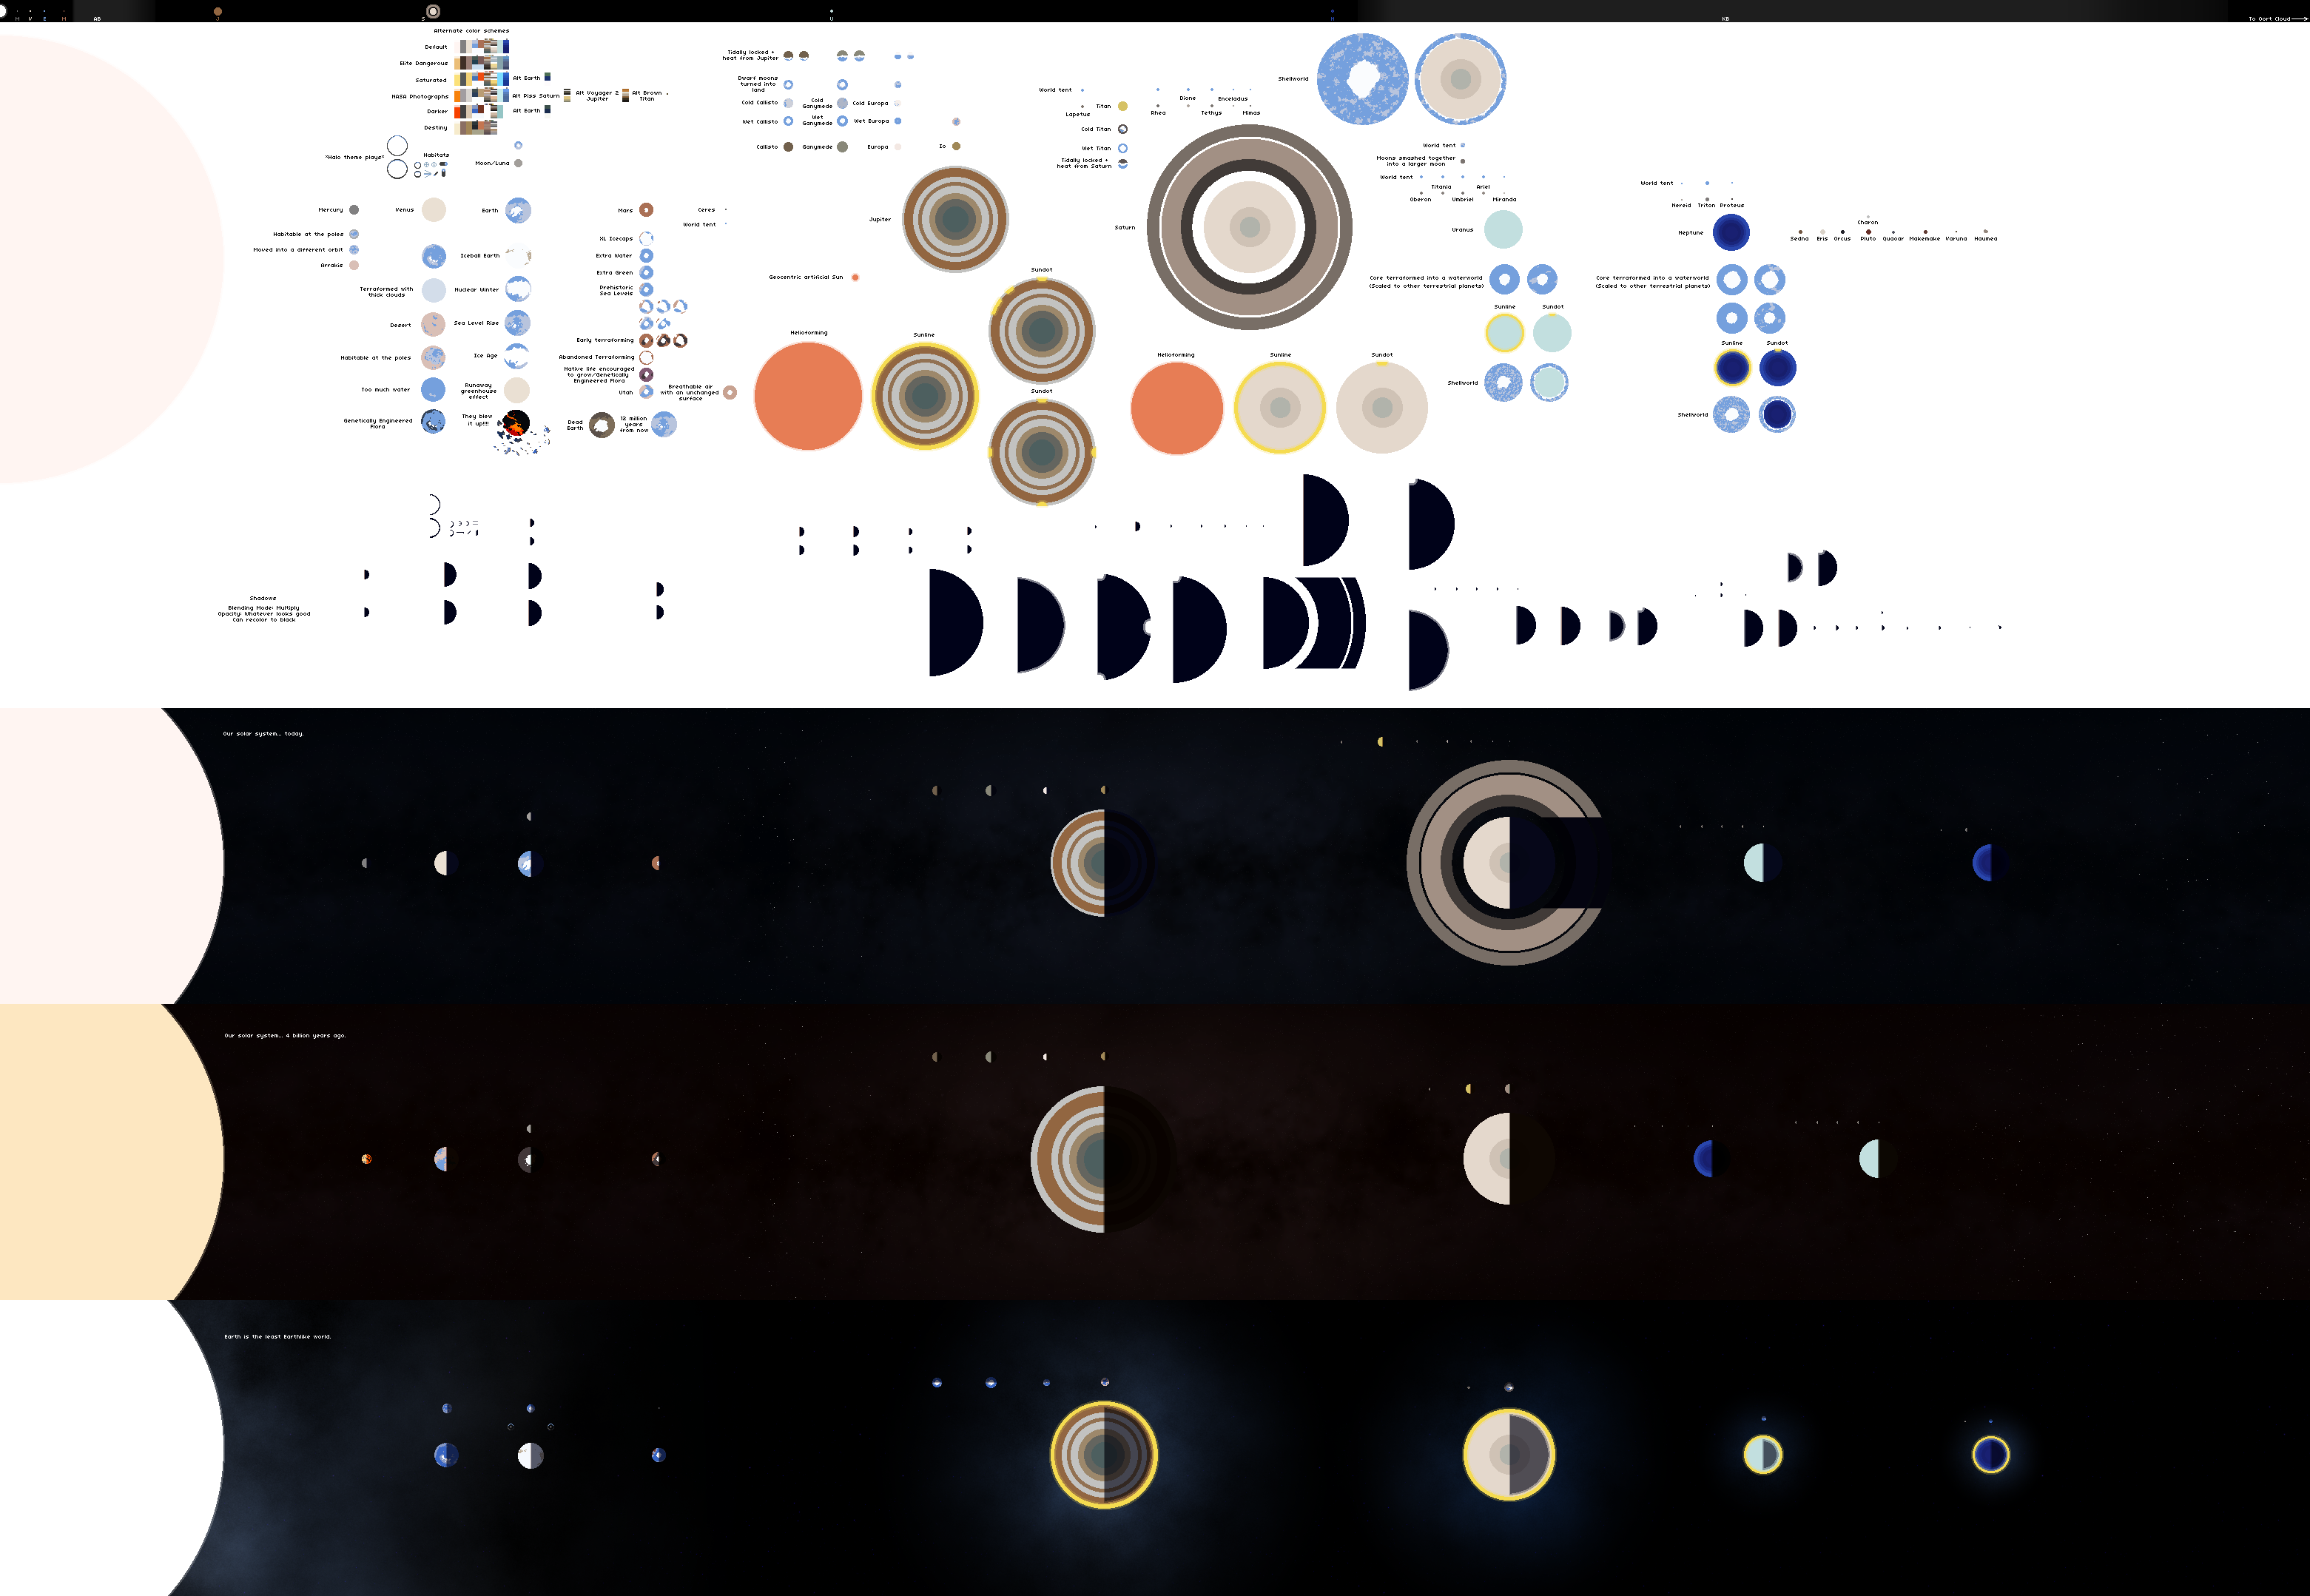 Build a Solar System Kit by slimysomething on DeviantArt3122 x 2157